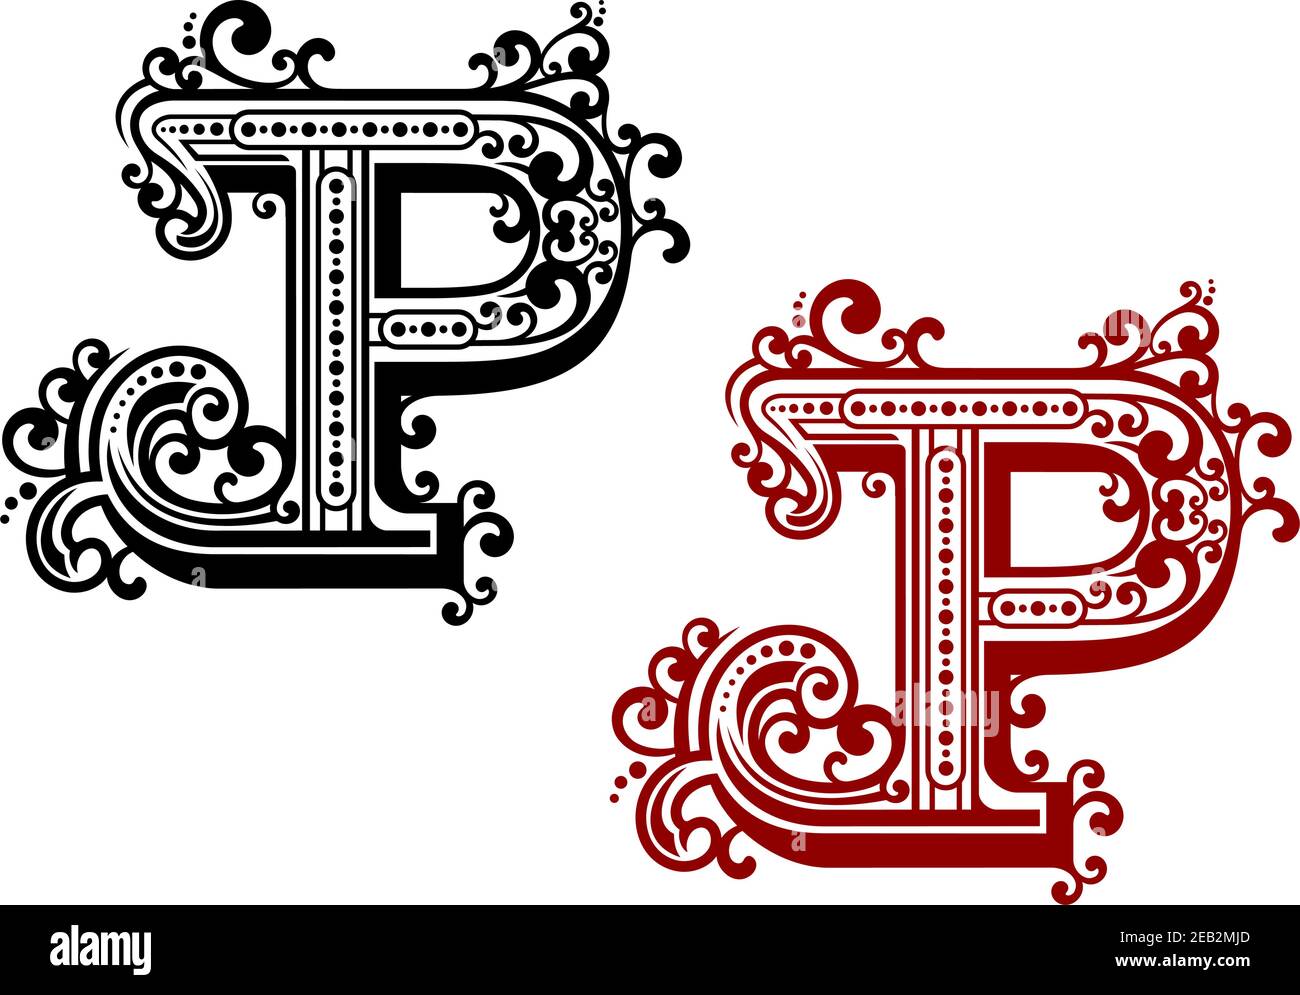 Lettera maiuscola P decorata da fiori ornamentali, linee ondulate e vari punti in stile retrò. Per font medievali o design monogramma Illustrazione Vettoriale